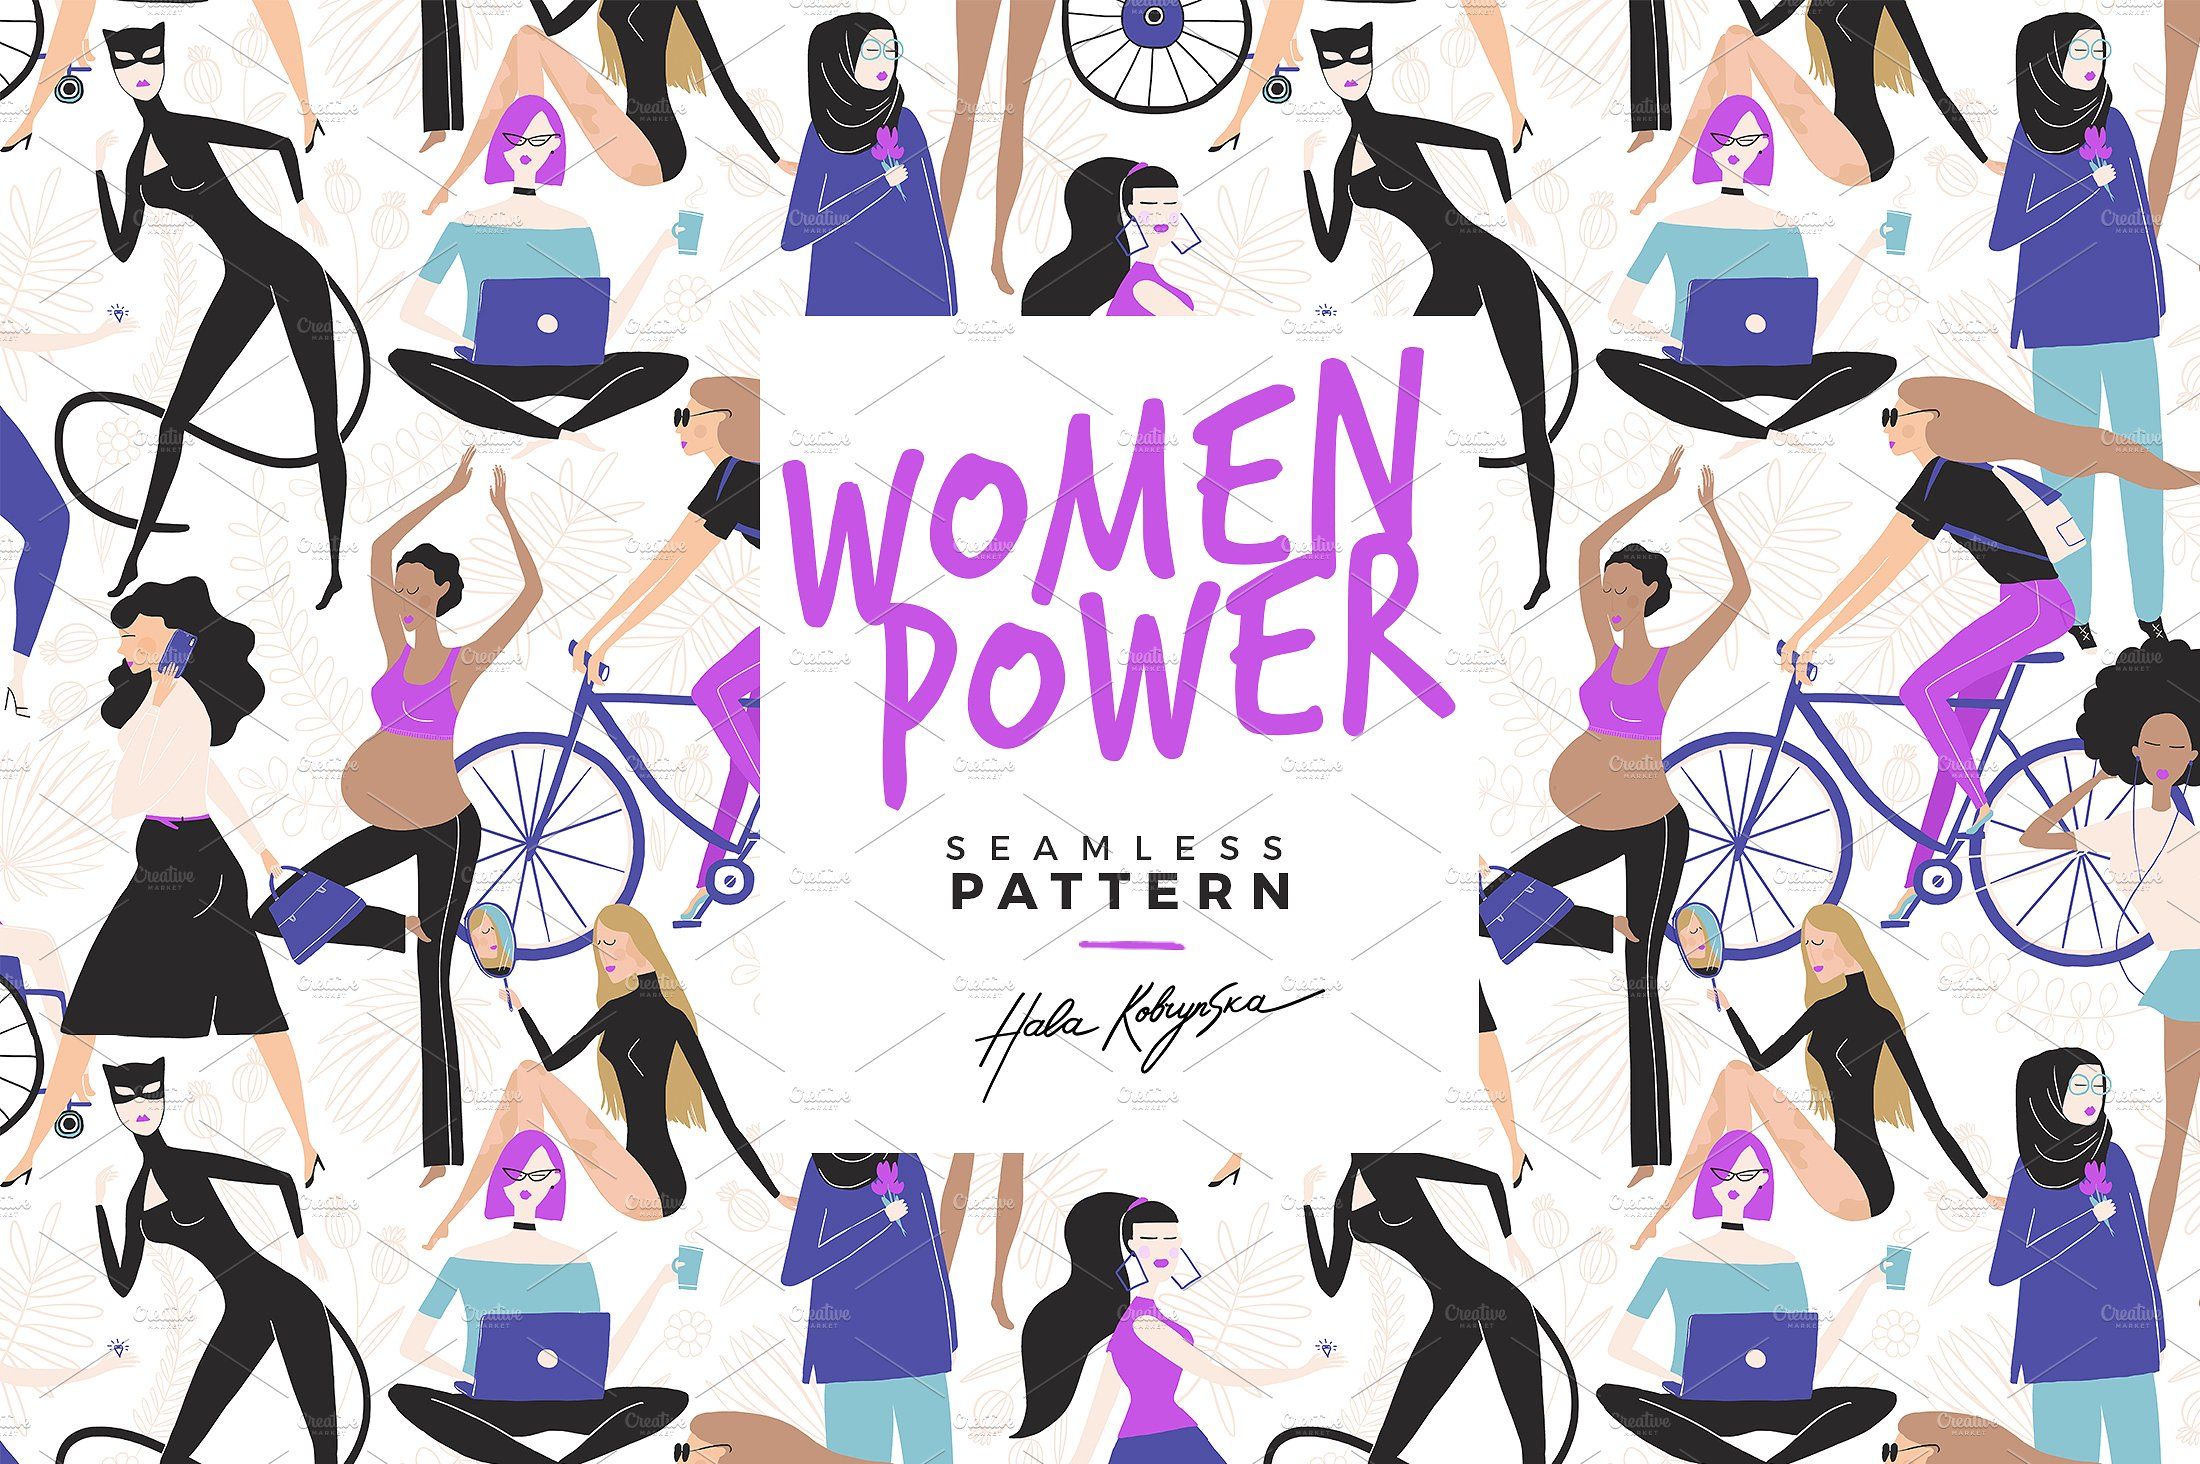 Women Power seamless pattern. Seamless patterns, Hand drawn pattern, Powerful women